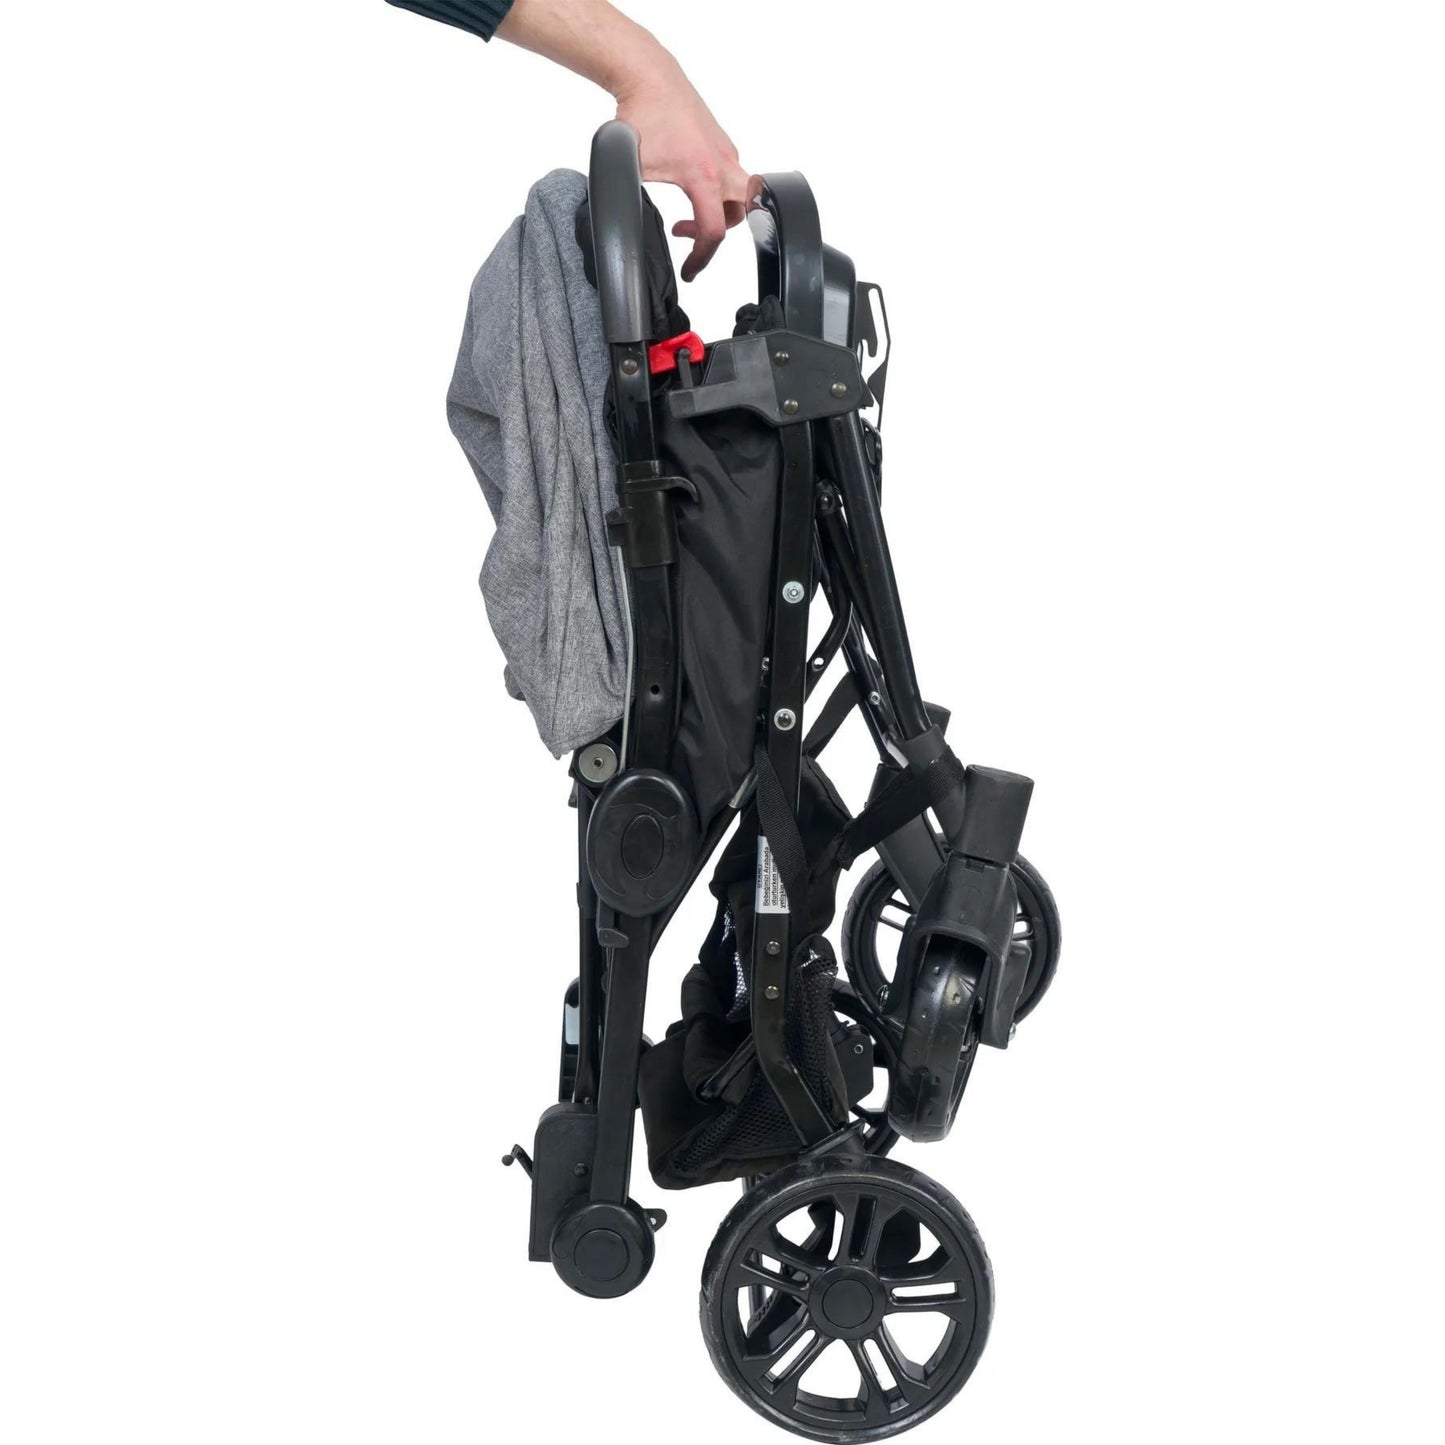 KidsKiddy™ - Trophy Black Edition Travel Stroller